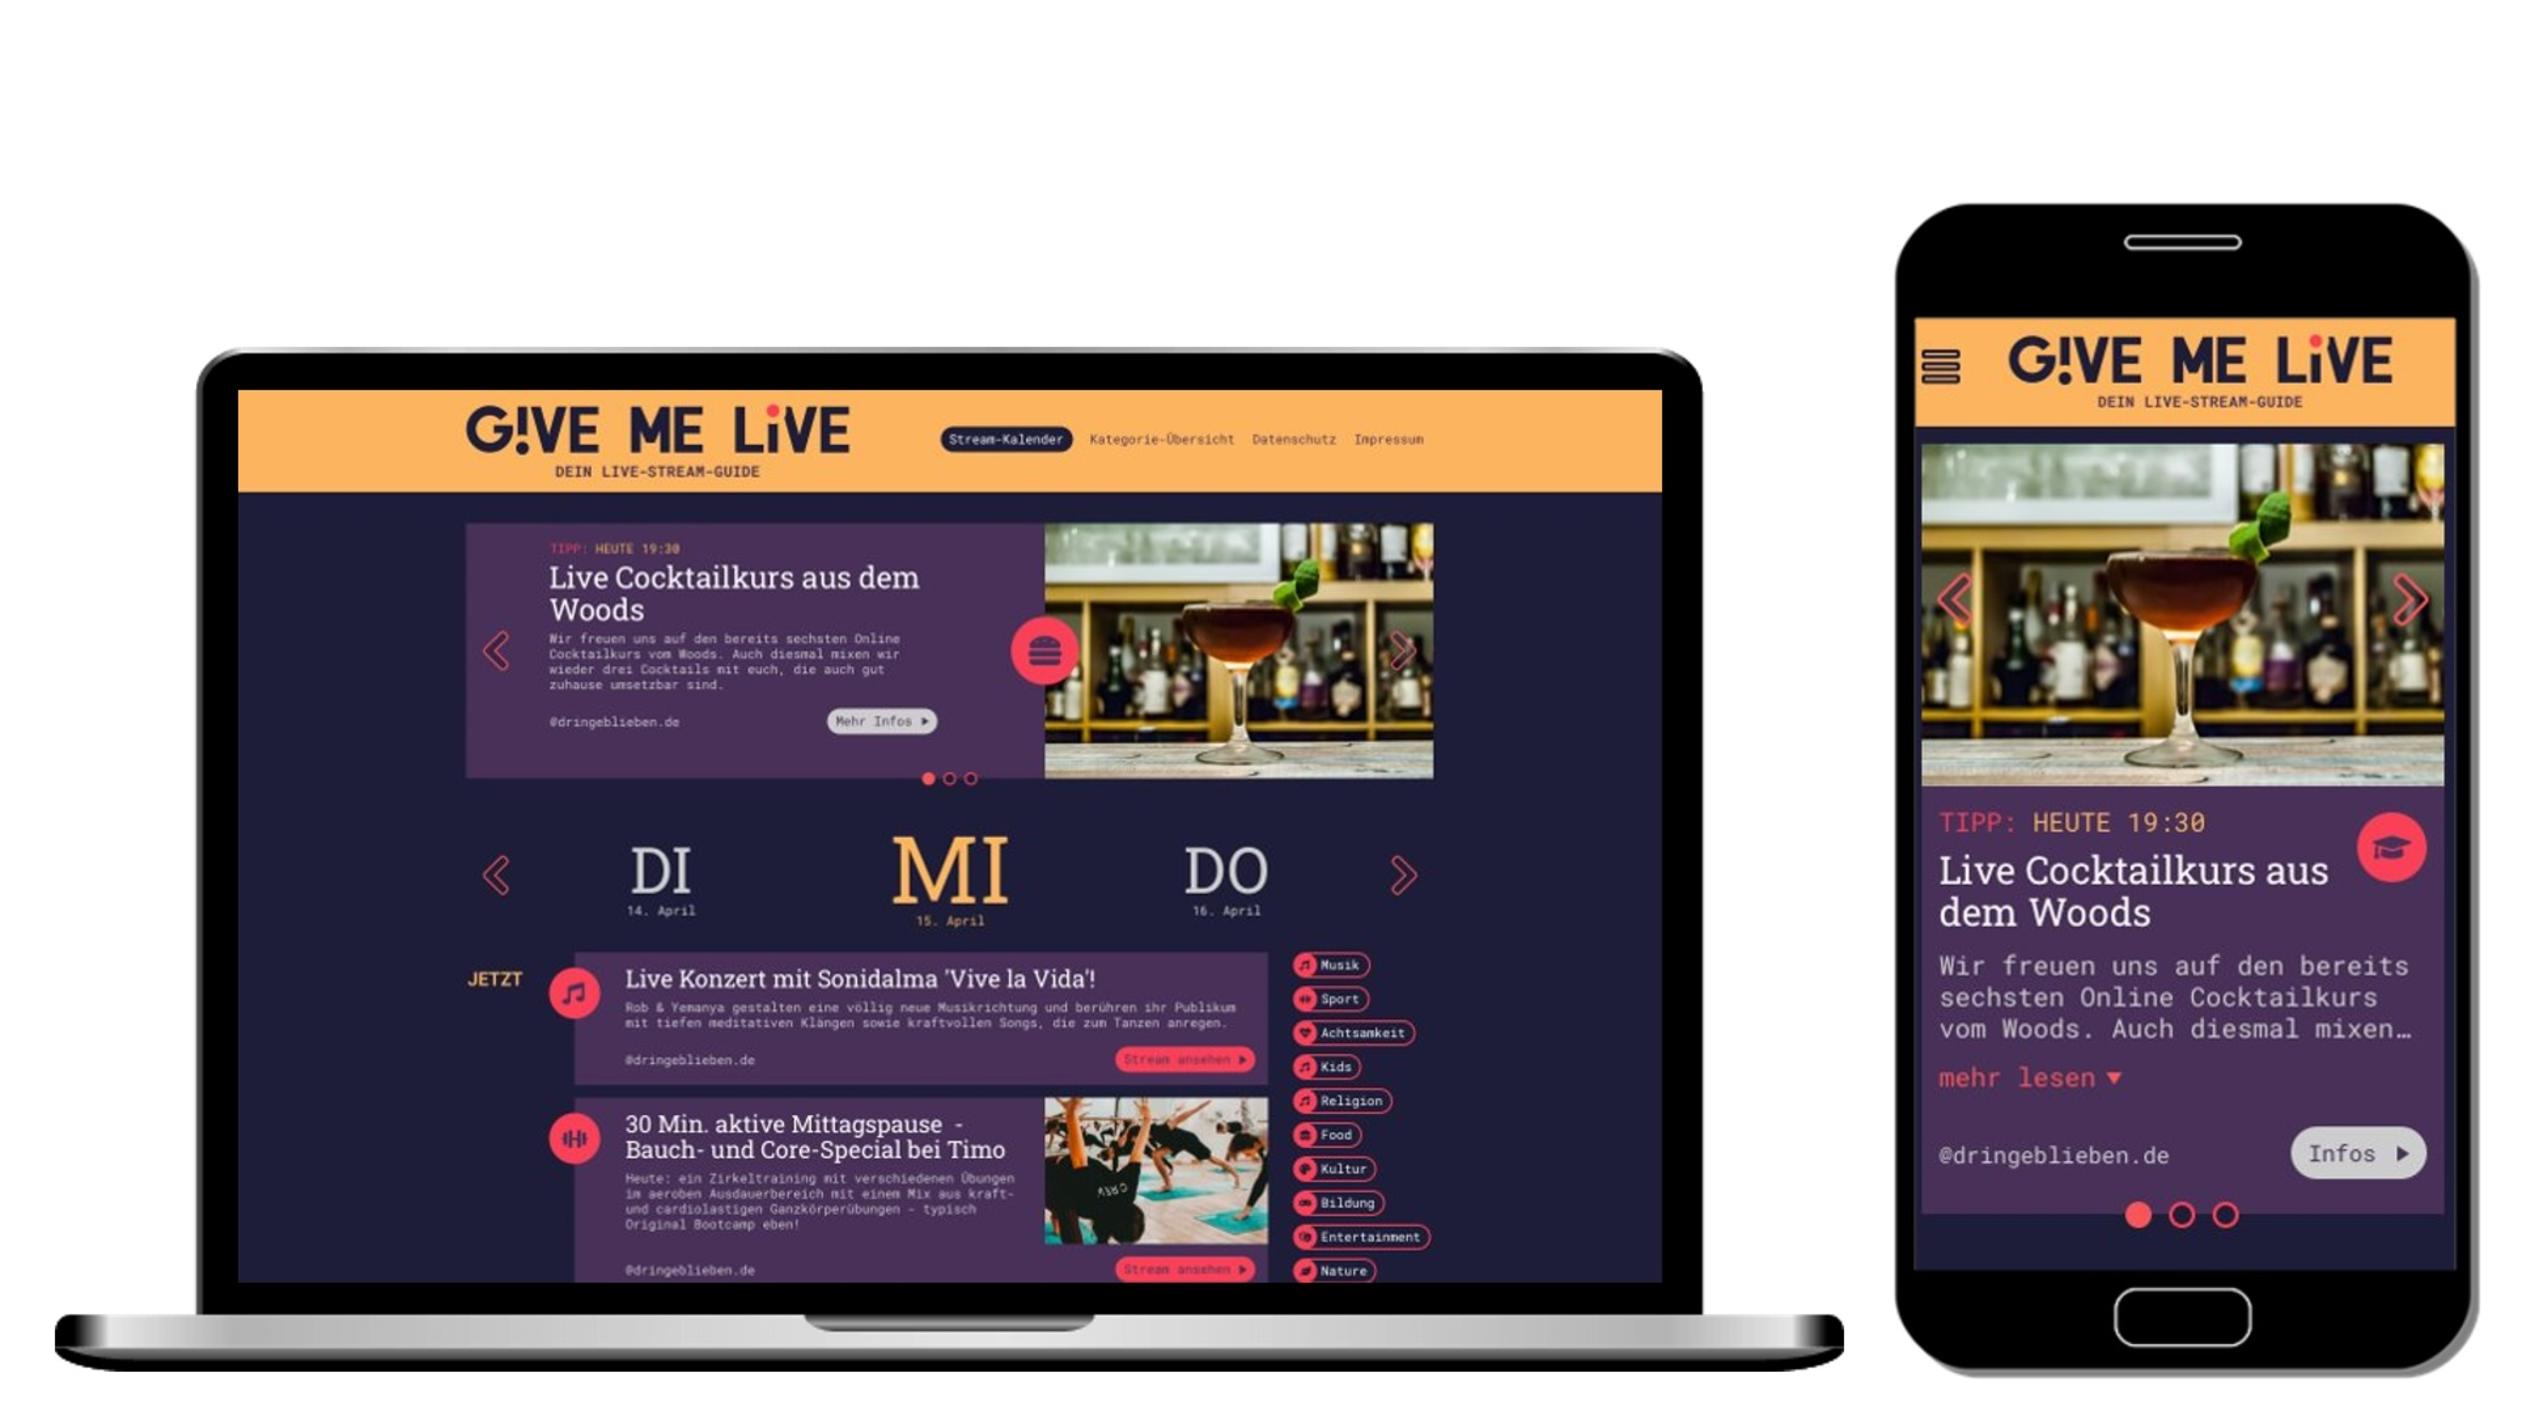 "Give Me Live" ist ein neuer Livestreaming-Guide der Mediengruppe RTL Deutschland.